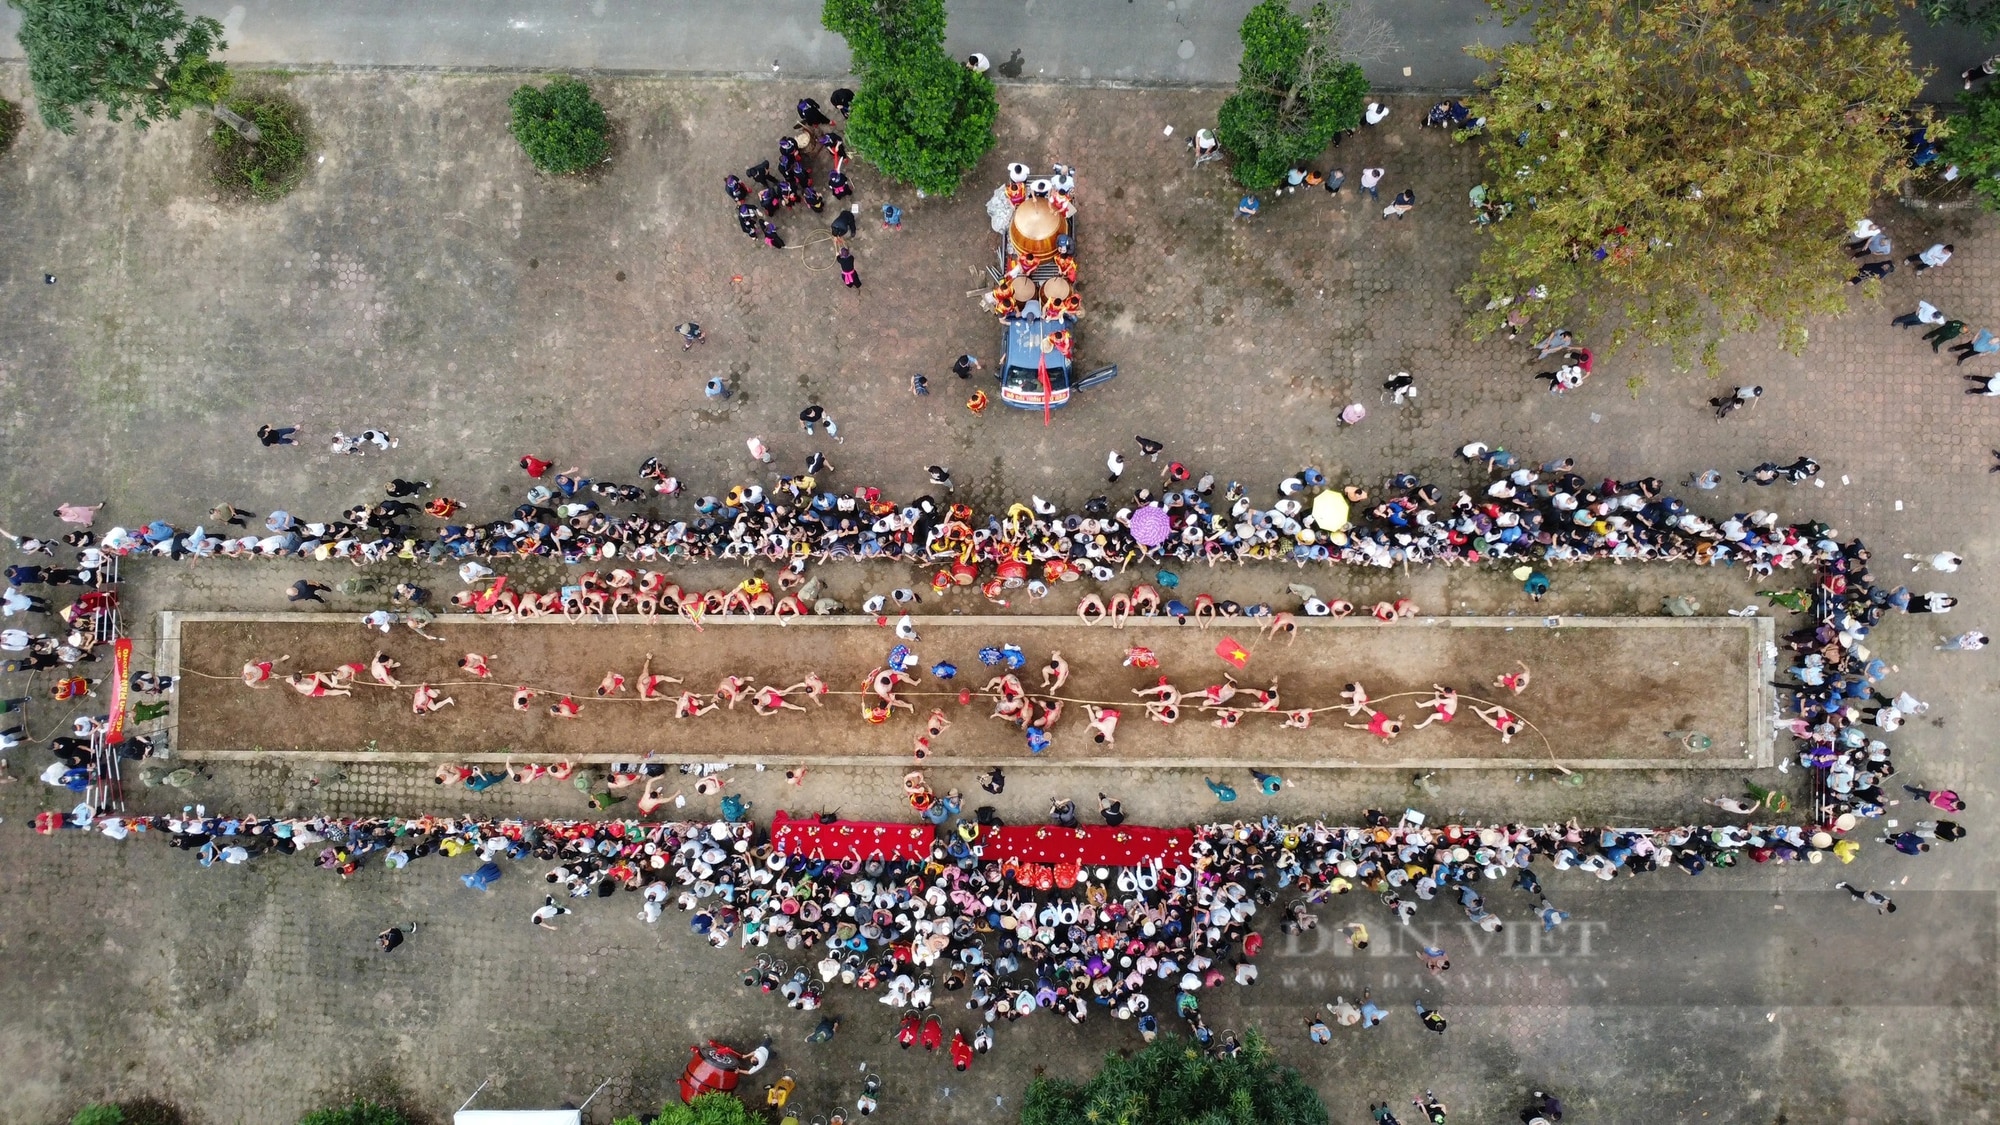 Độc đáo trò kéo co ngồi tại một lễ hội ở Hà Nội- Ảnh 1.